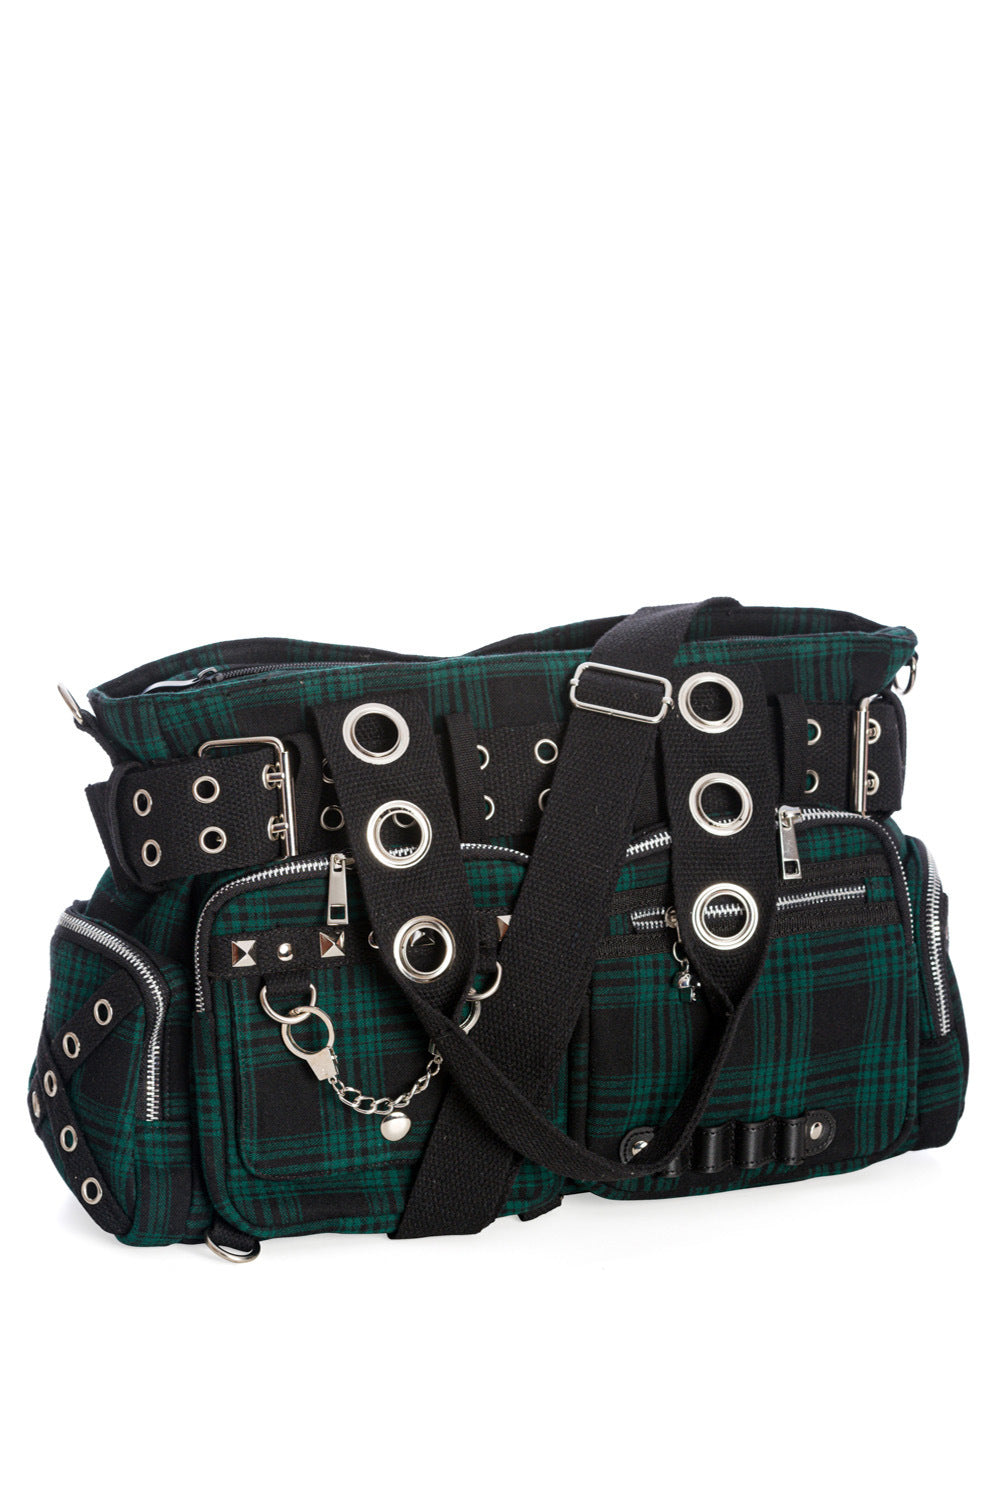 Grün-karierte Handtasche CAMDYN HANDBAG Green mit Handschellendetail, mehreren kleinen Seitentaschen und vielen Zier-Ösen von Banned